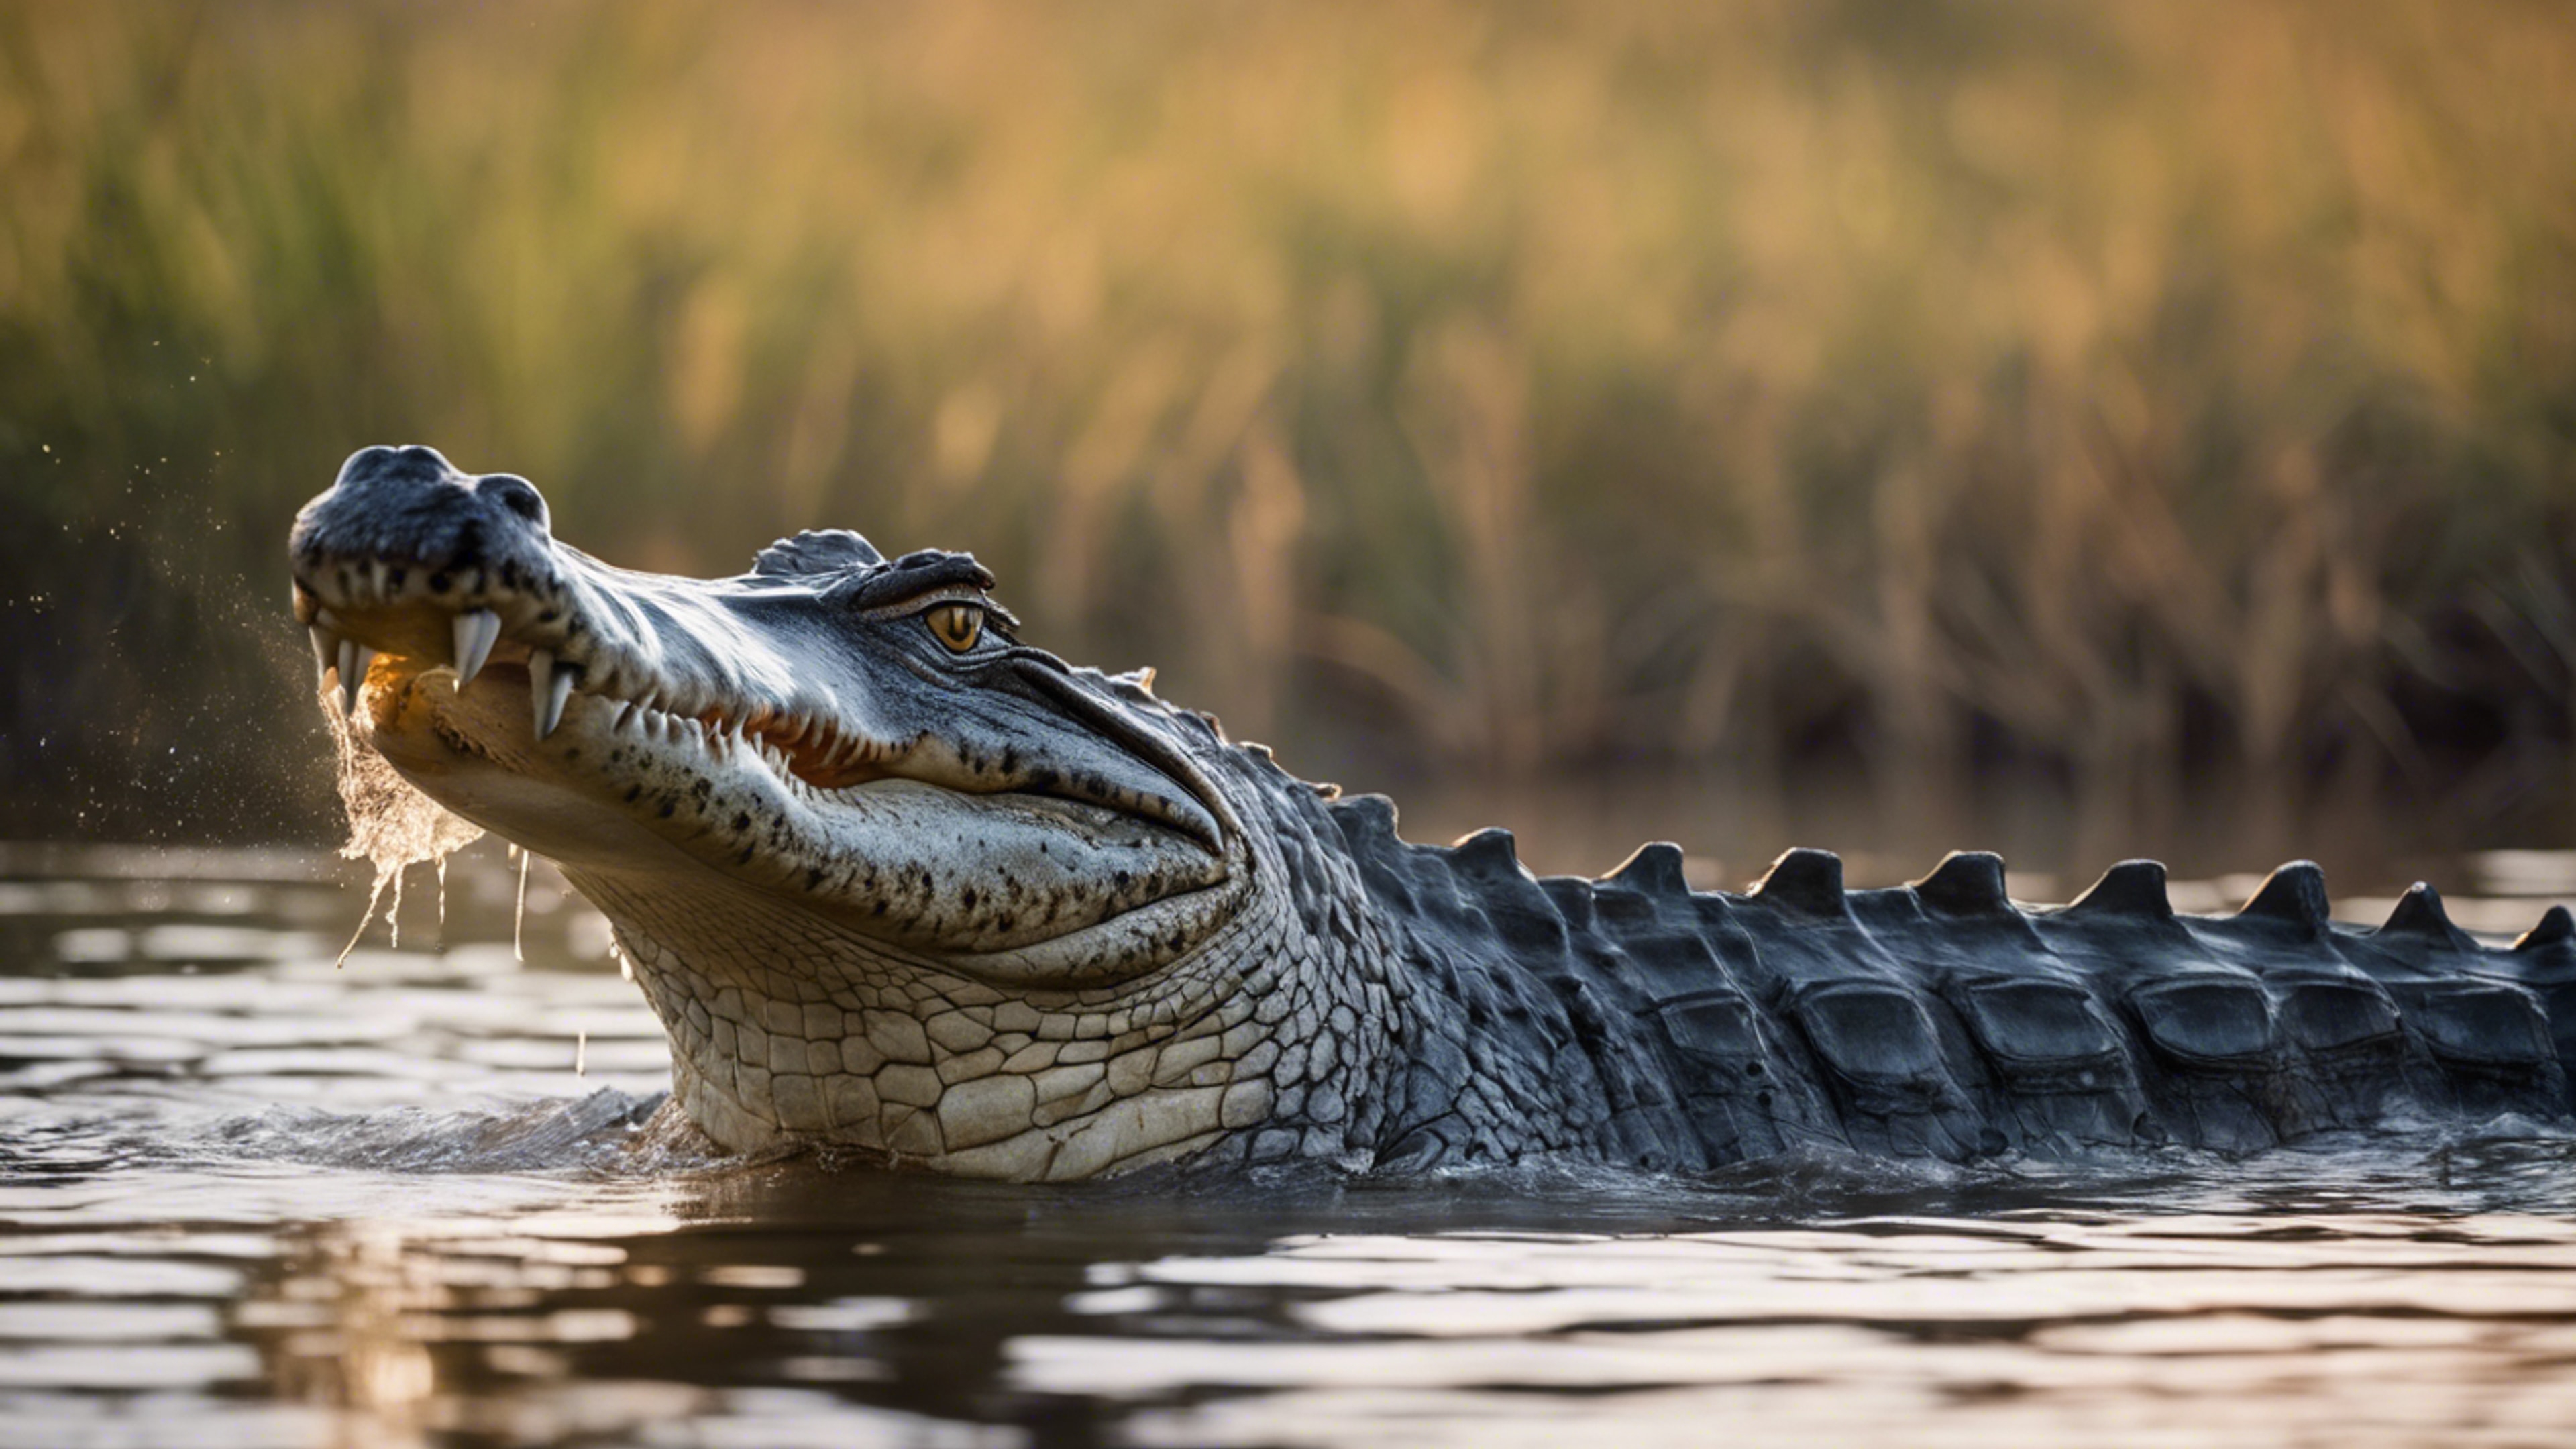 A glorious scene of a crocodile in the heart of the Okavango Delta.壁紙[926204686e5b483ca4a6]